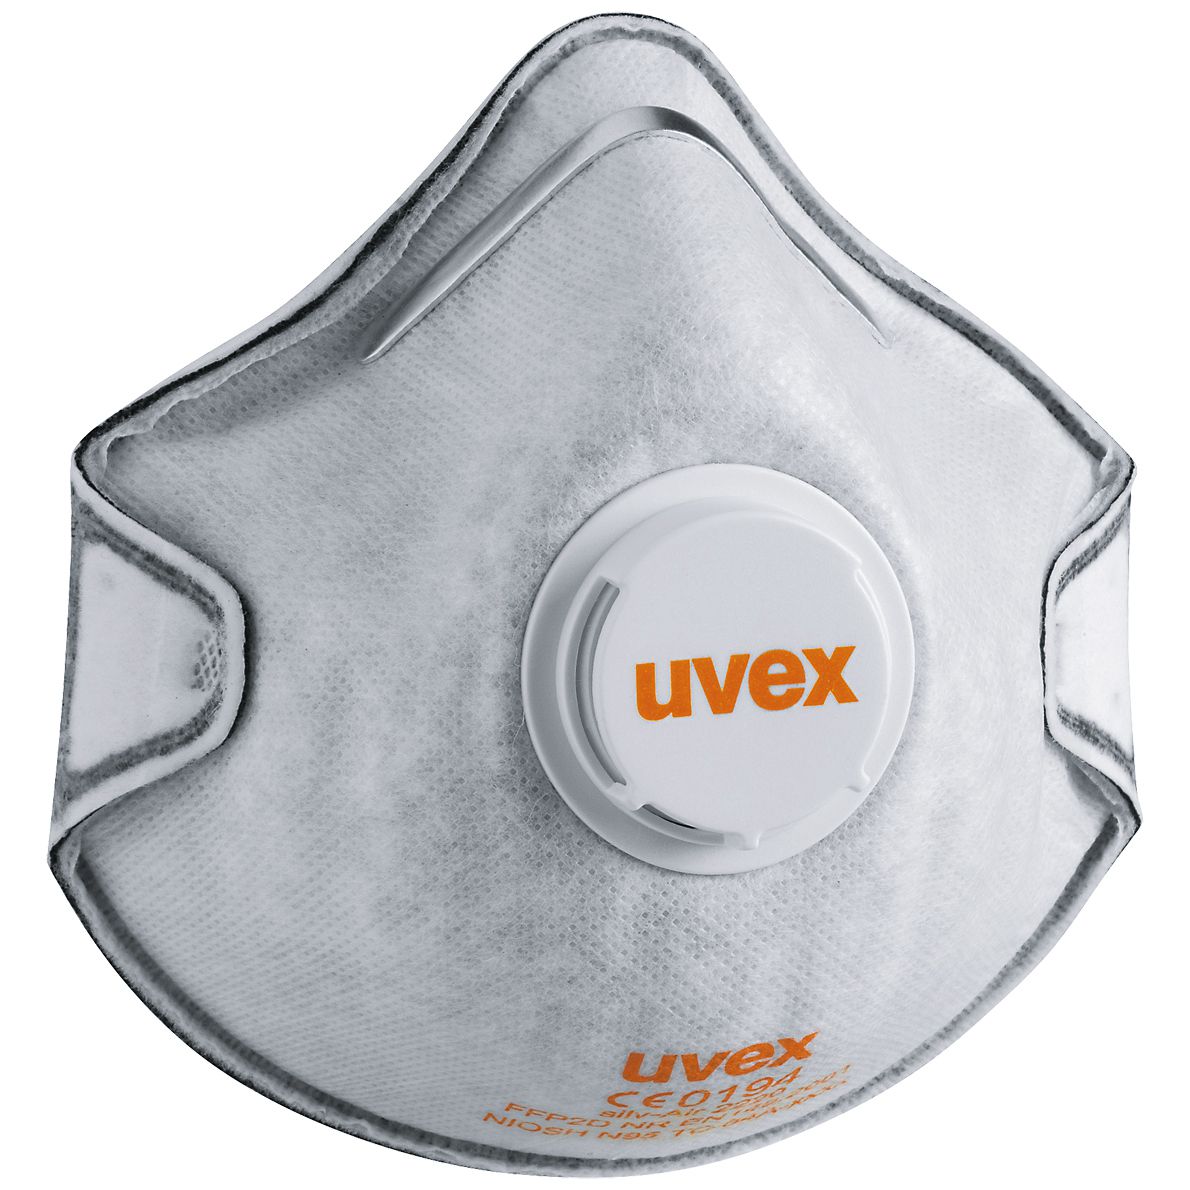 ABVERKAUF: uvex silv-Air 2220 Staubmaske - FFP2-Staubschutzmaske - Atemmaske mit Ventil & Geruchsfilter